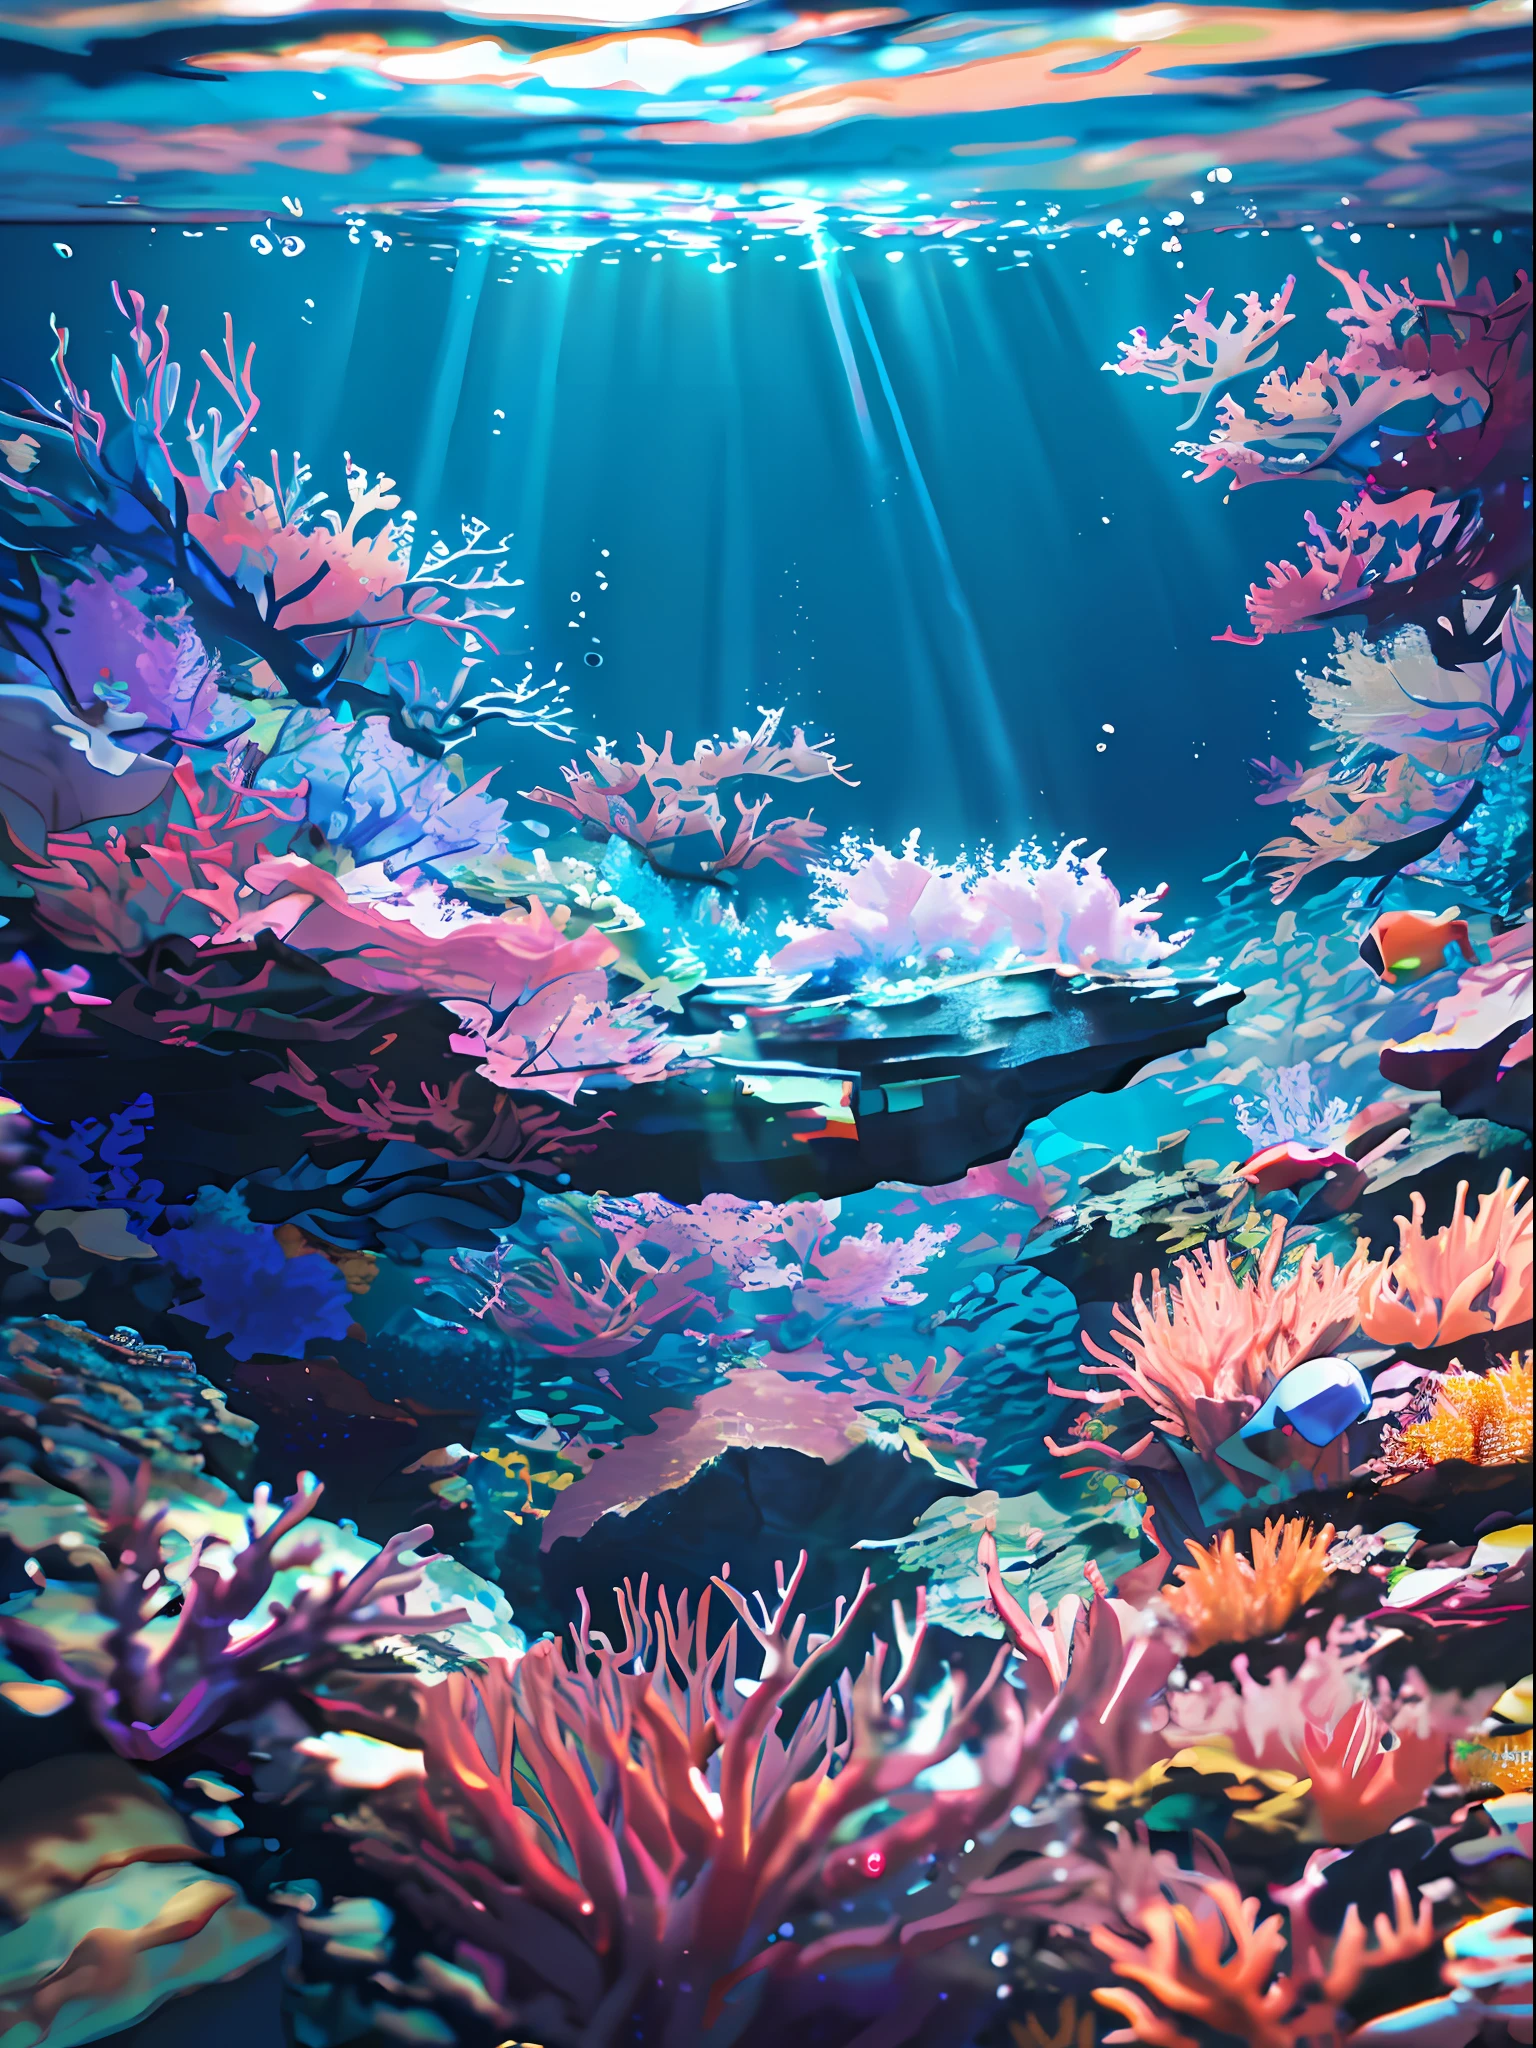 (Meisterwerk, beste Qualität:1.2), (keine Menschen, Cliff, Unterwasser, Perspektive, von unten:1.5), 8k, RAW-Foto, absurdesten, Wunderschönes Korallenriff, Felsen, viele sehr kleine Fische, Bunte tropische Fische, Lichtlecks, Tiefenschärfe, atemberaubende Landschaft, Filmkorn, chromatische Abweichung, dynamische Beleuchtung, dramatische Beleuchtung, HDR, fotorealistisch, Filmkorn, chromatische Abweichung, highres, Extrem detailliert, fein detailliert, Extrem detailliert, Schatten, scharfer Fokus